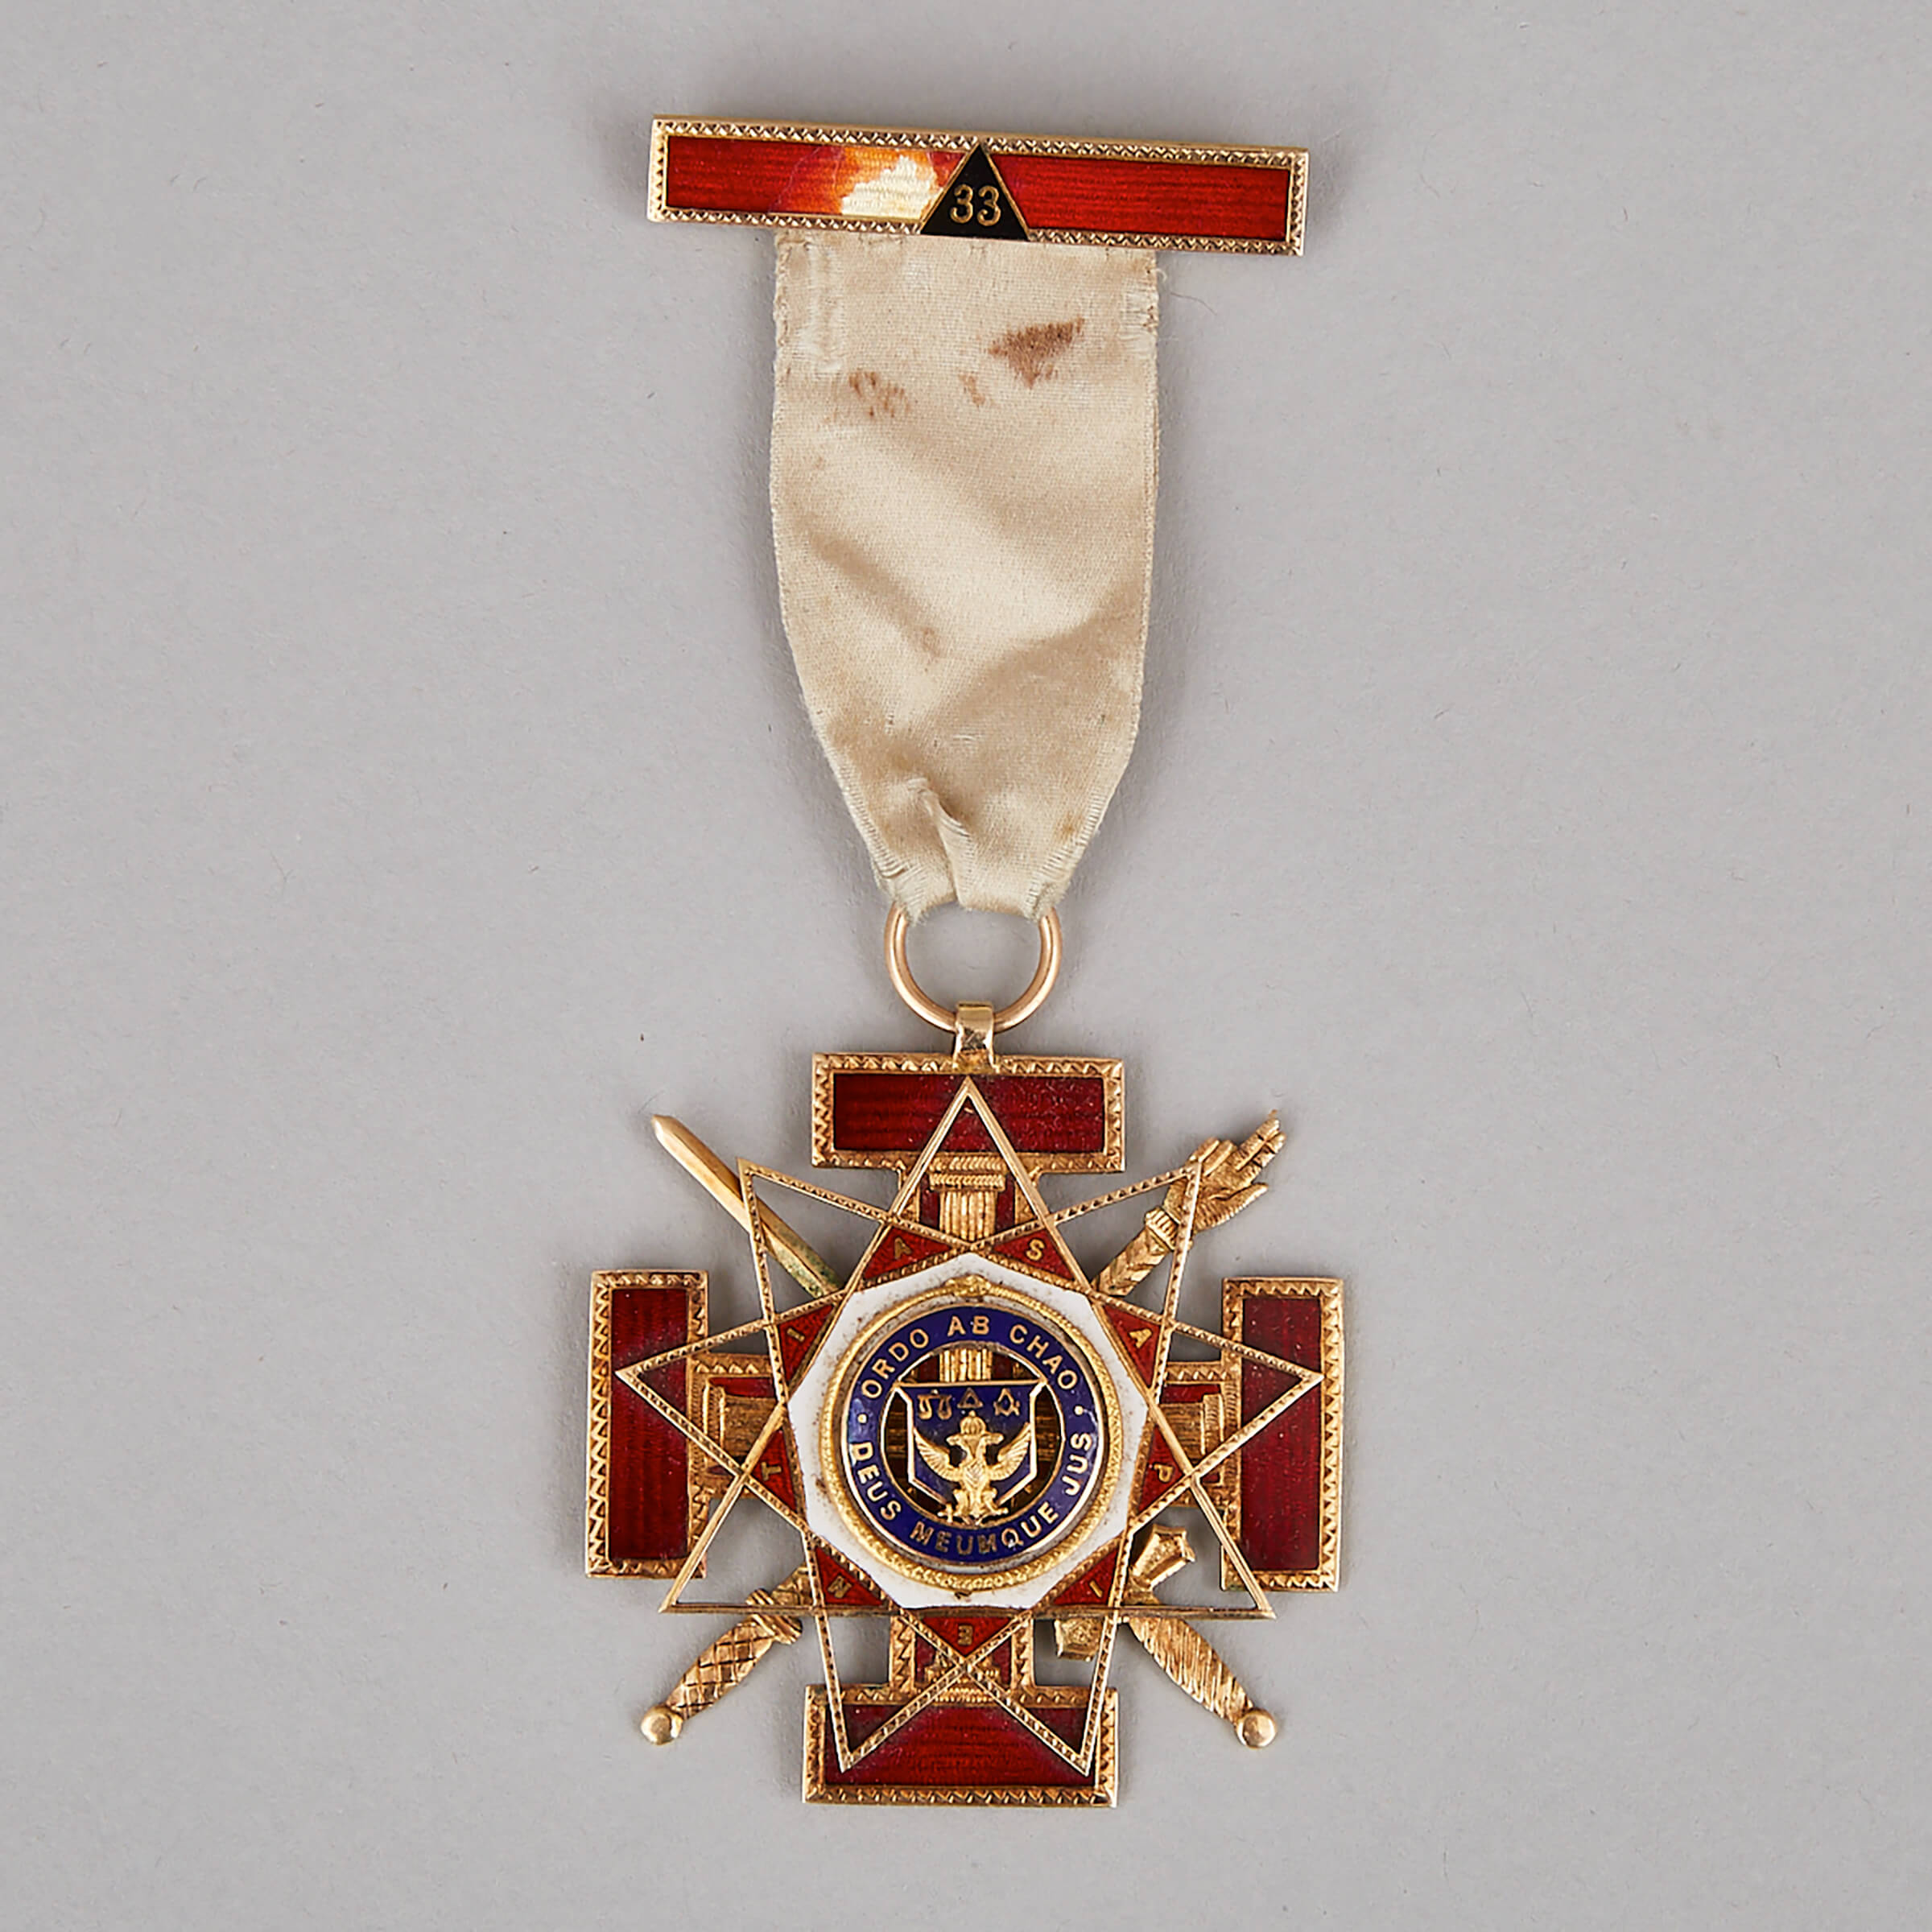 Masonic Enamelled Gold 33rd Degree Scottish Rite Medal, 1922